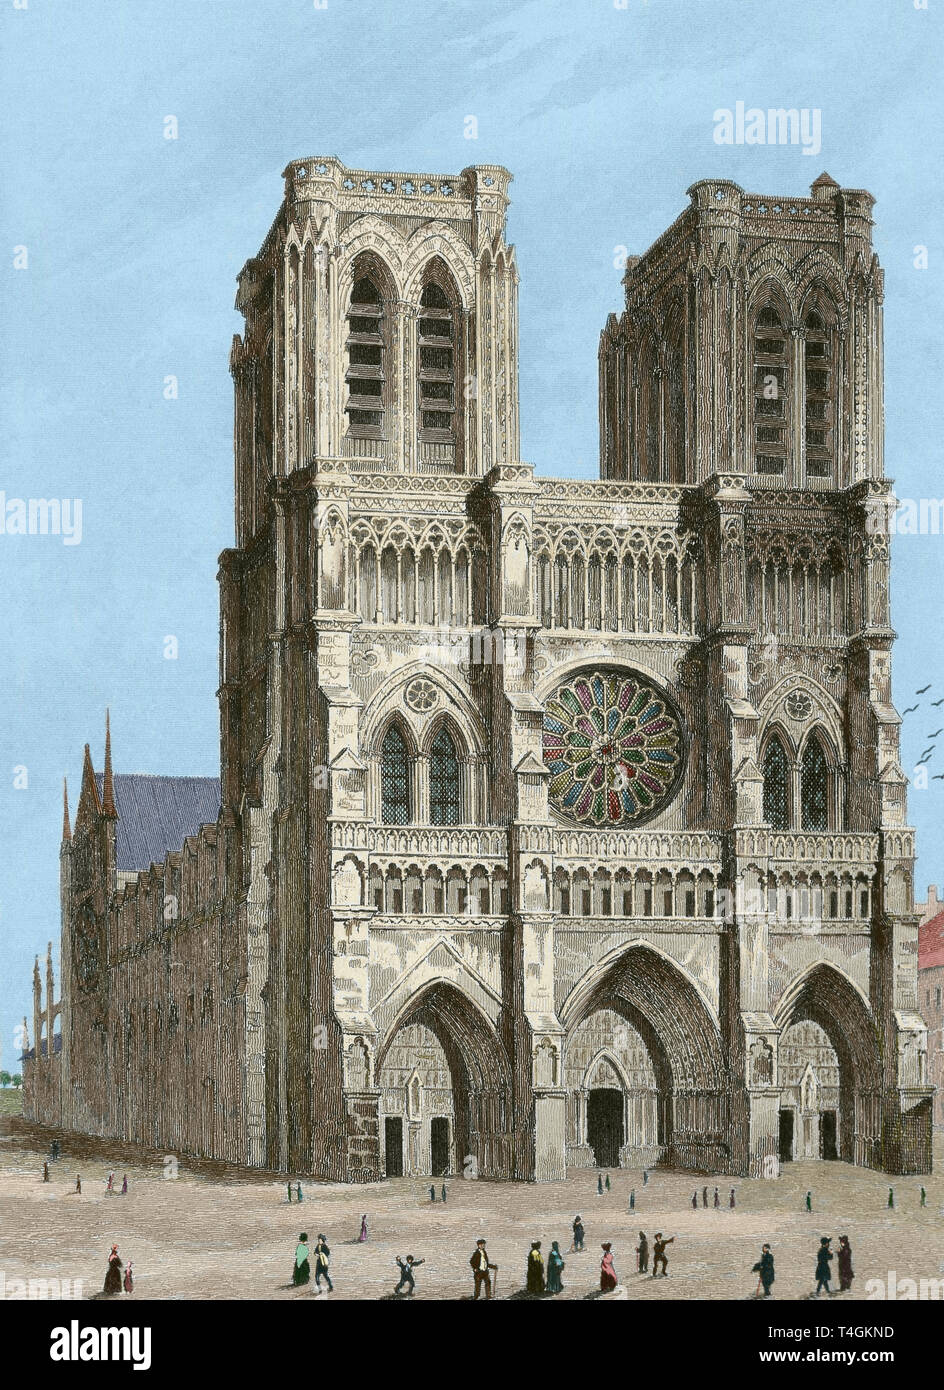 Cathédrale Notre-Dame, Paris, France. Sa construction a commencé en 1163 et a été achevé en 1345. Dessin par Gaucherel. Gravure, 1841. Universal-France 'Panorama'. Plus tard la couleur. Banque D'Images